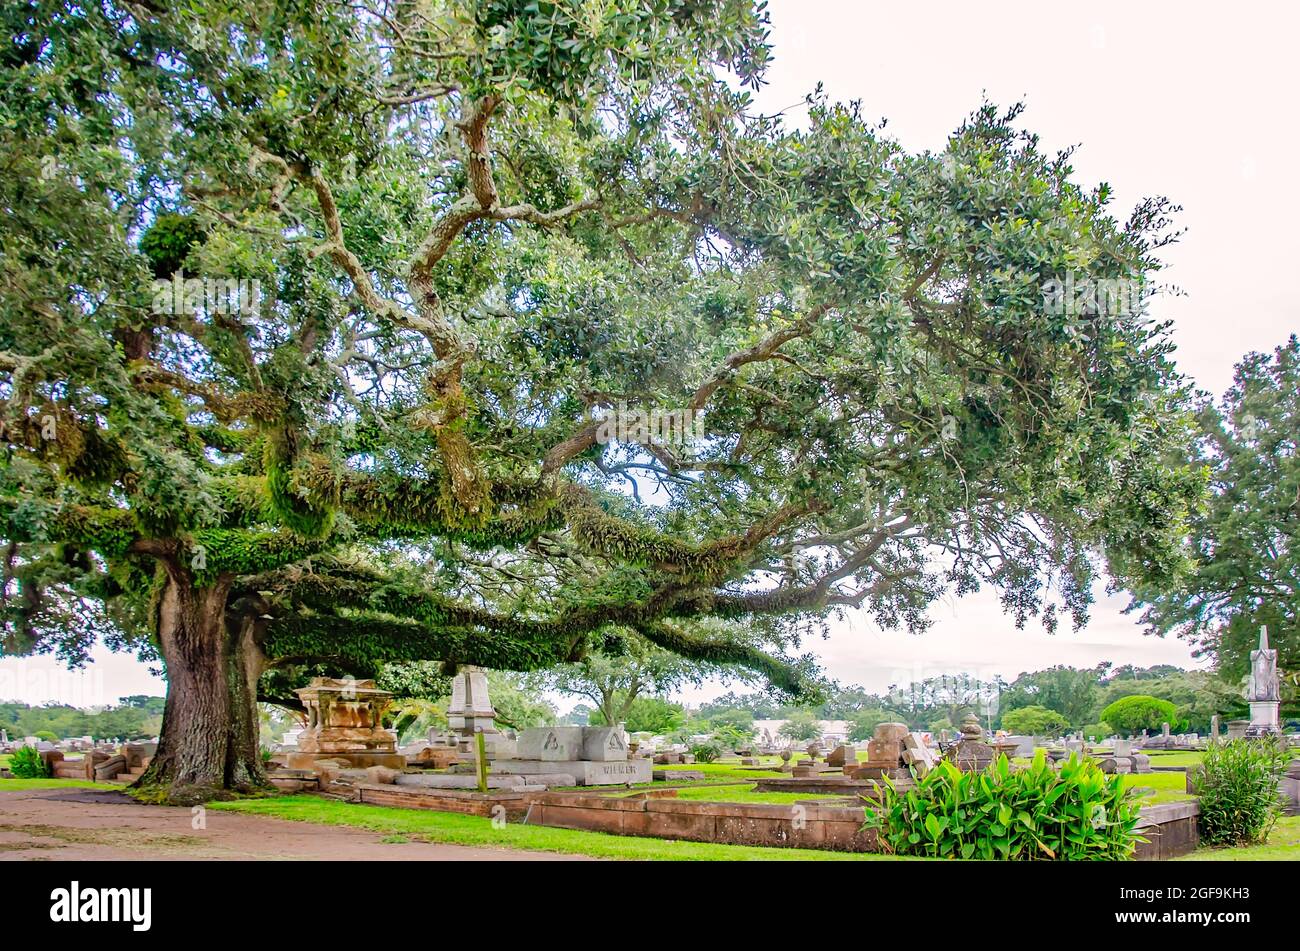 Il cimitero di Magnolia presenta tombe ornate circondate da secolari querce del sud, 14 agosto 2021, a Mobile, Alabama. Foto Stock